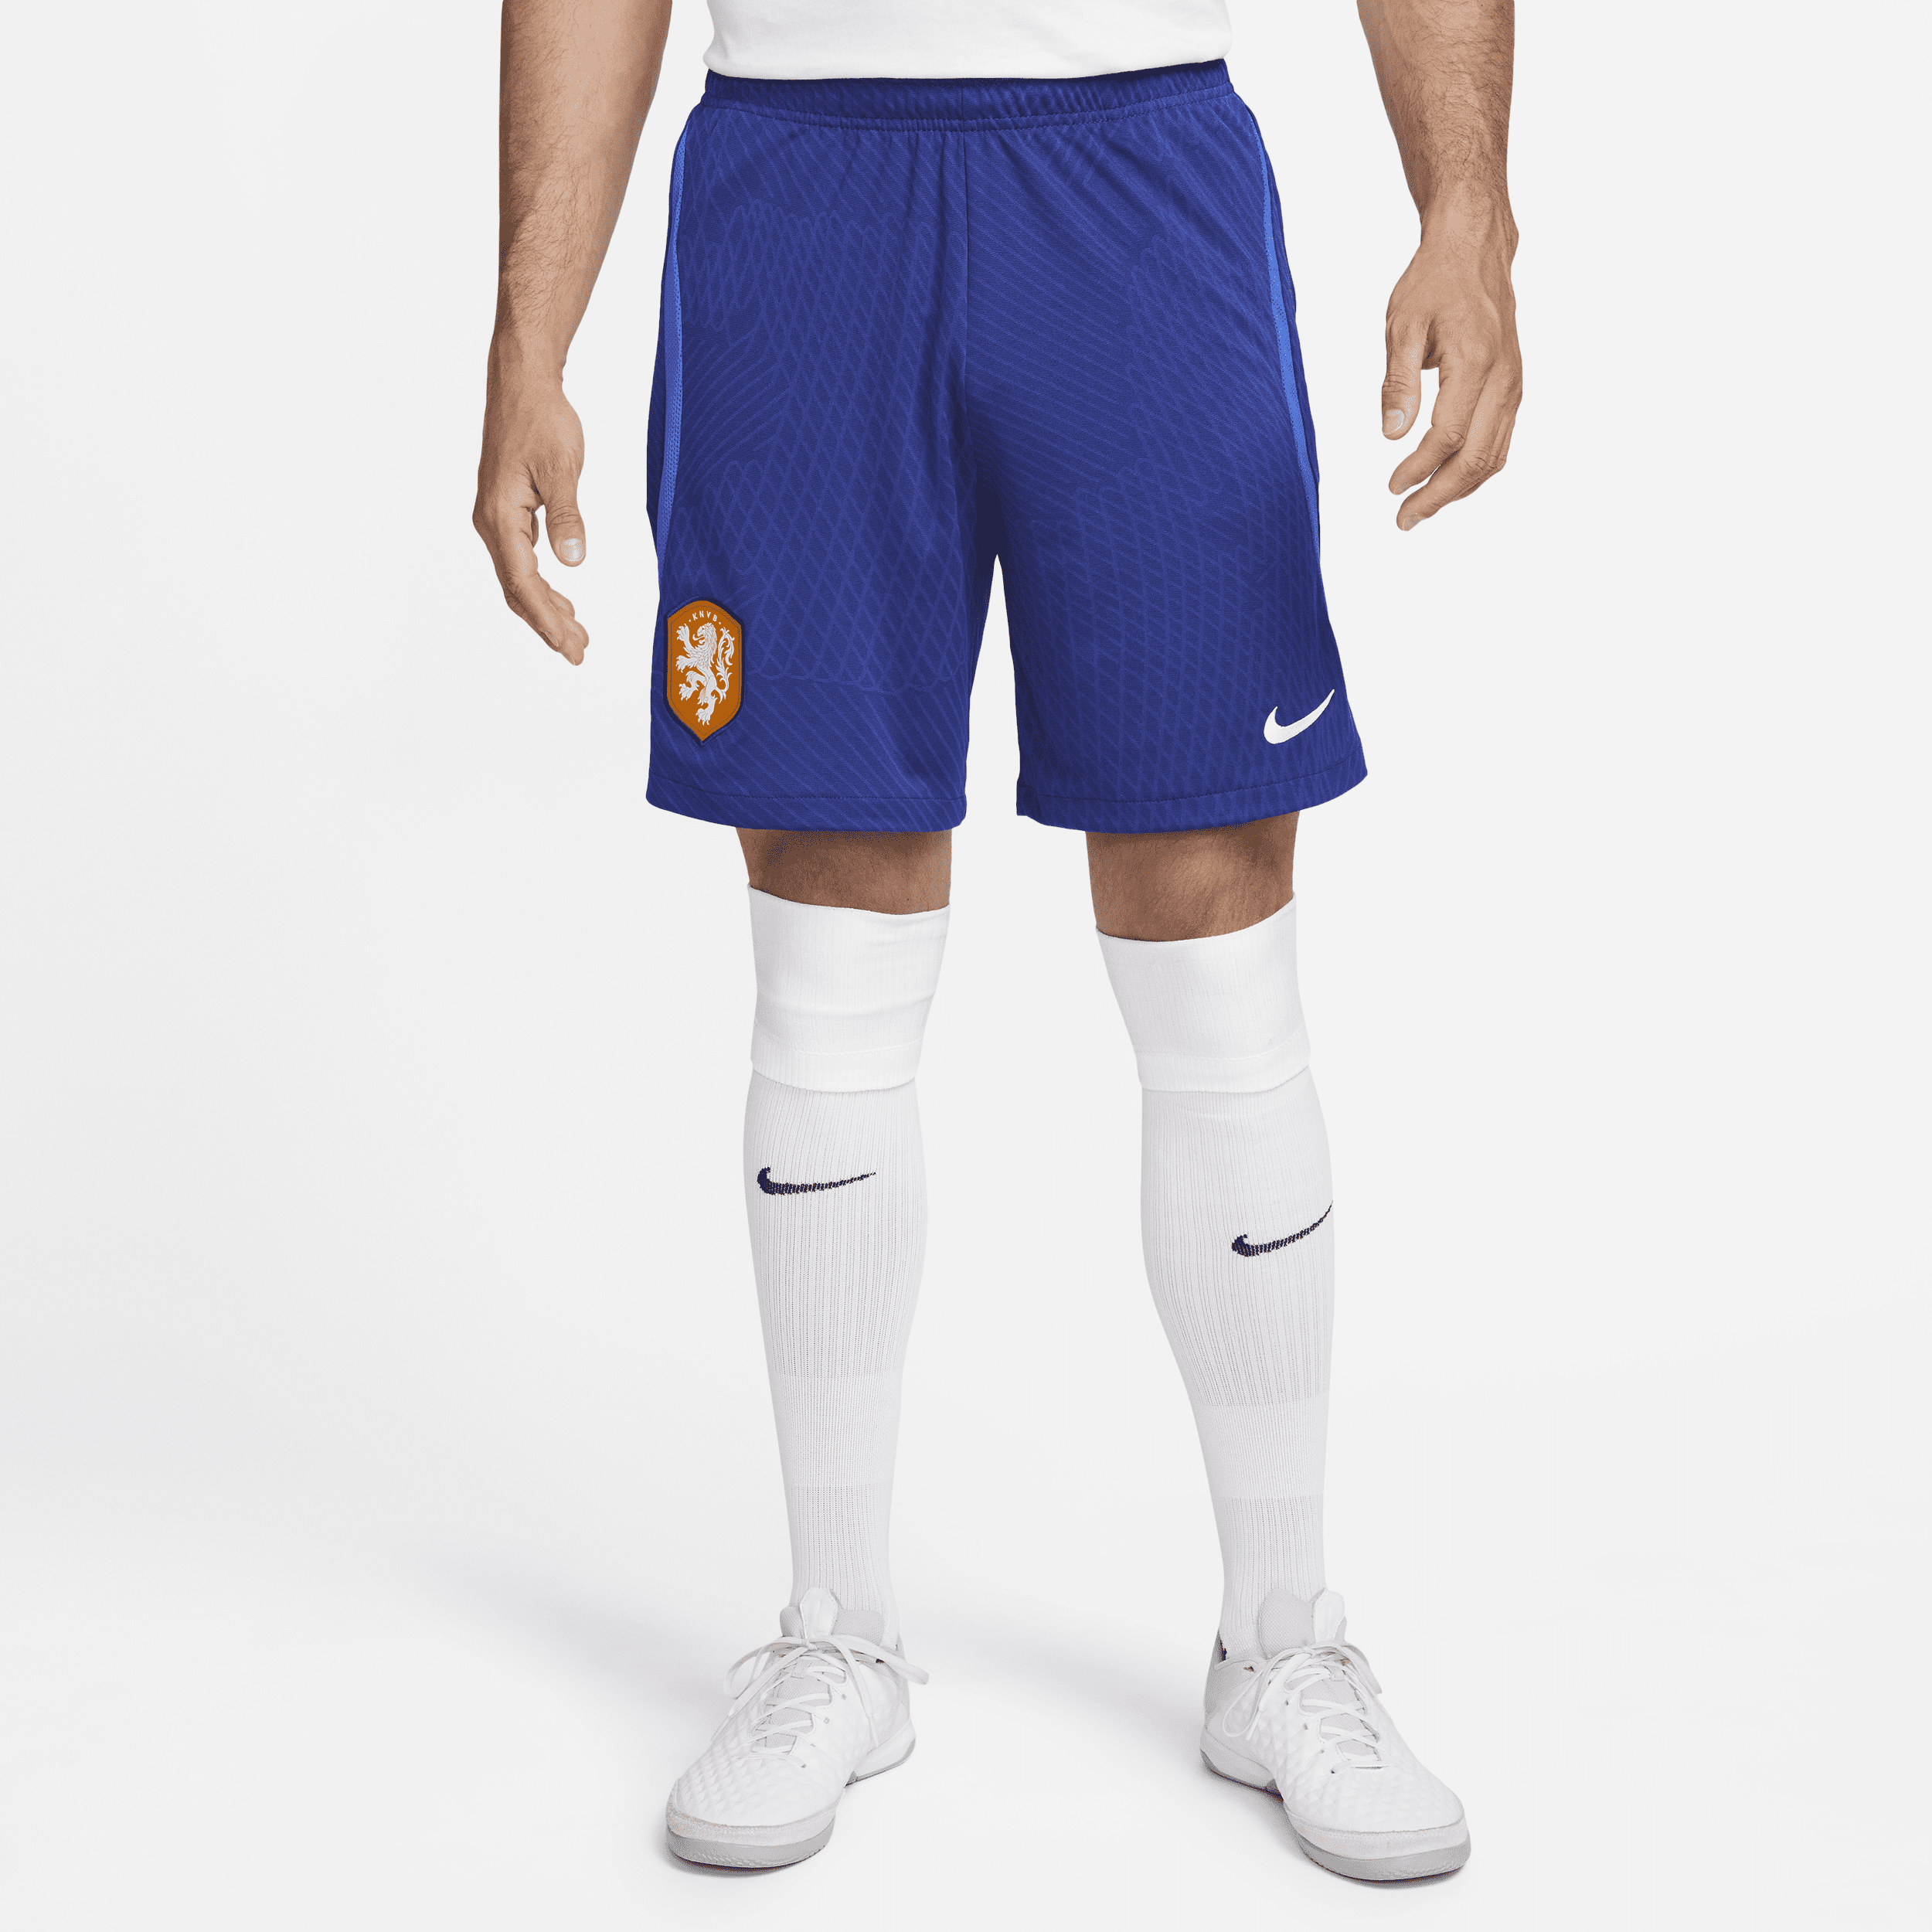 Nederland Strike Nike Dri-FIT knit voetbalshorts voor heren - Blauw